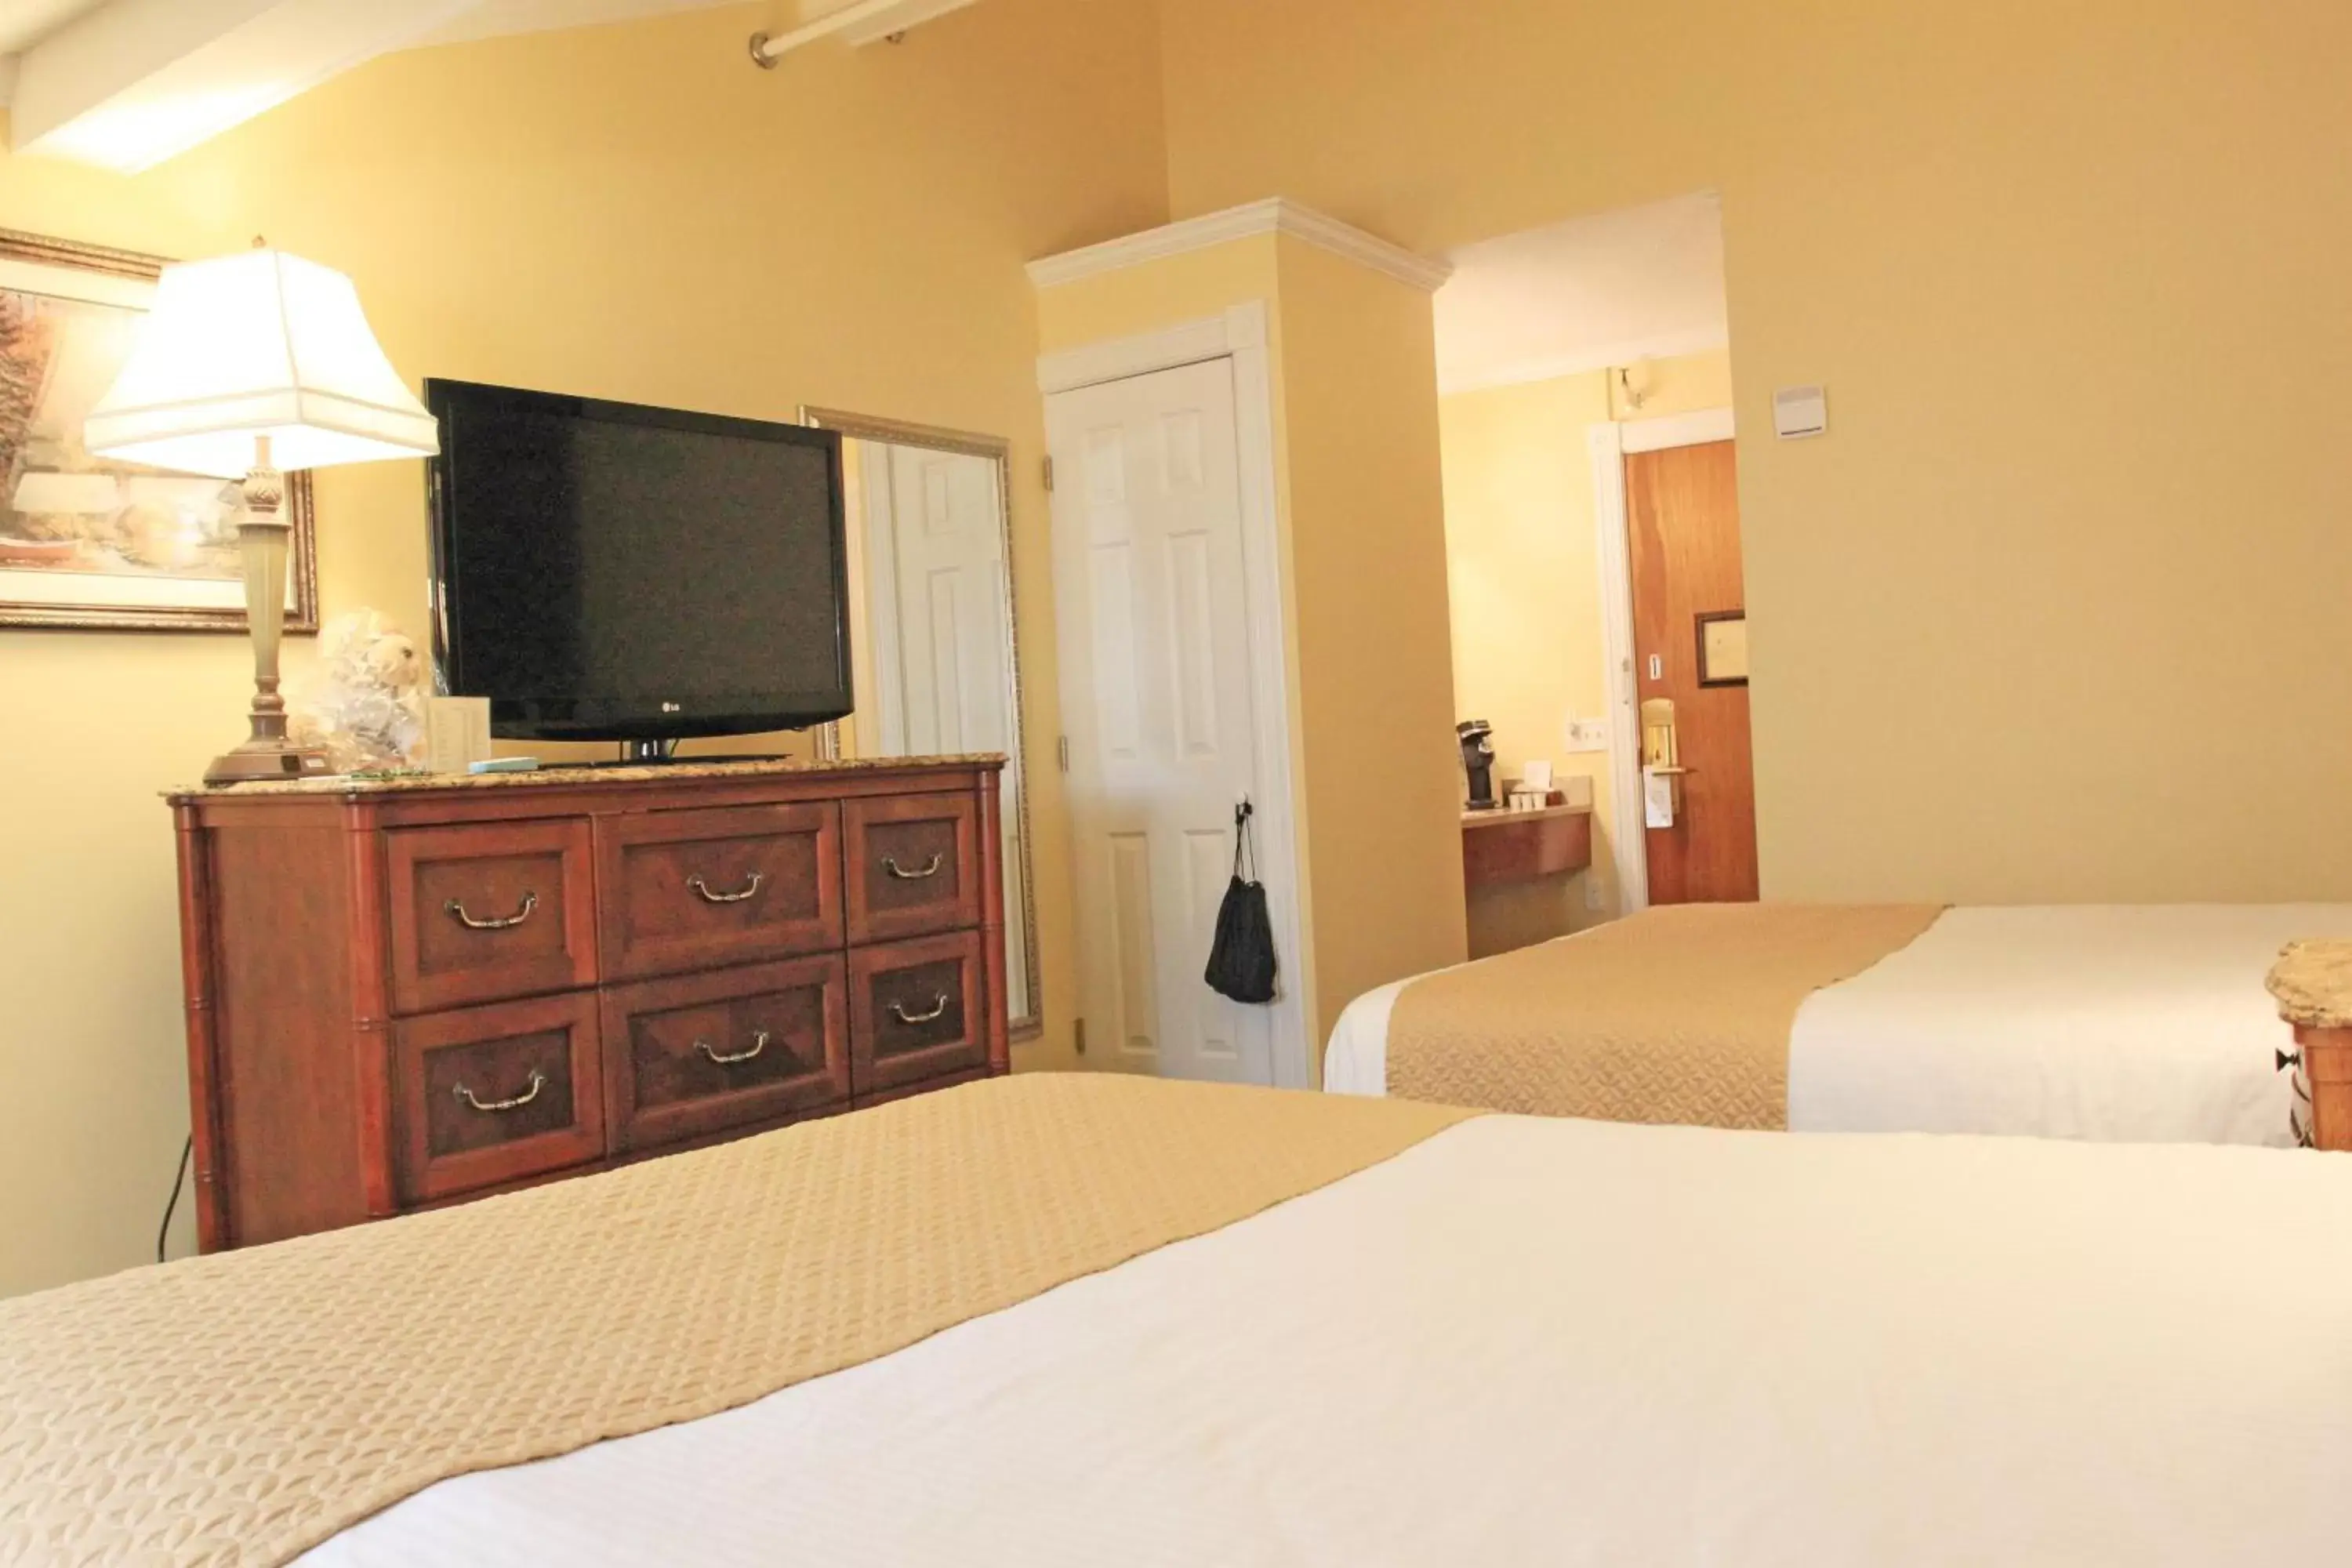 Bedroom, TV/Entertainment Center in Best Western White House Inn